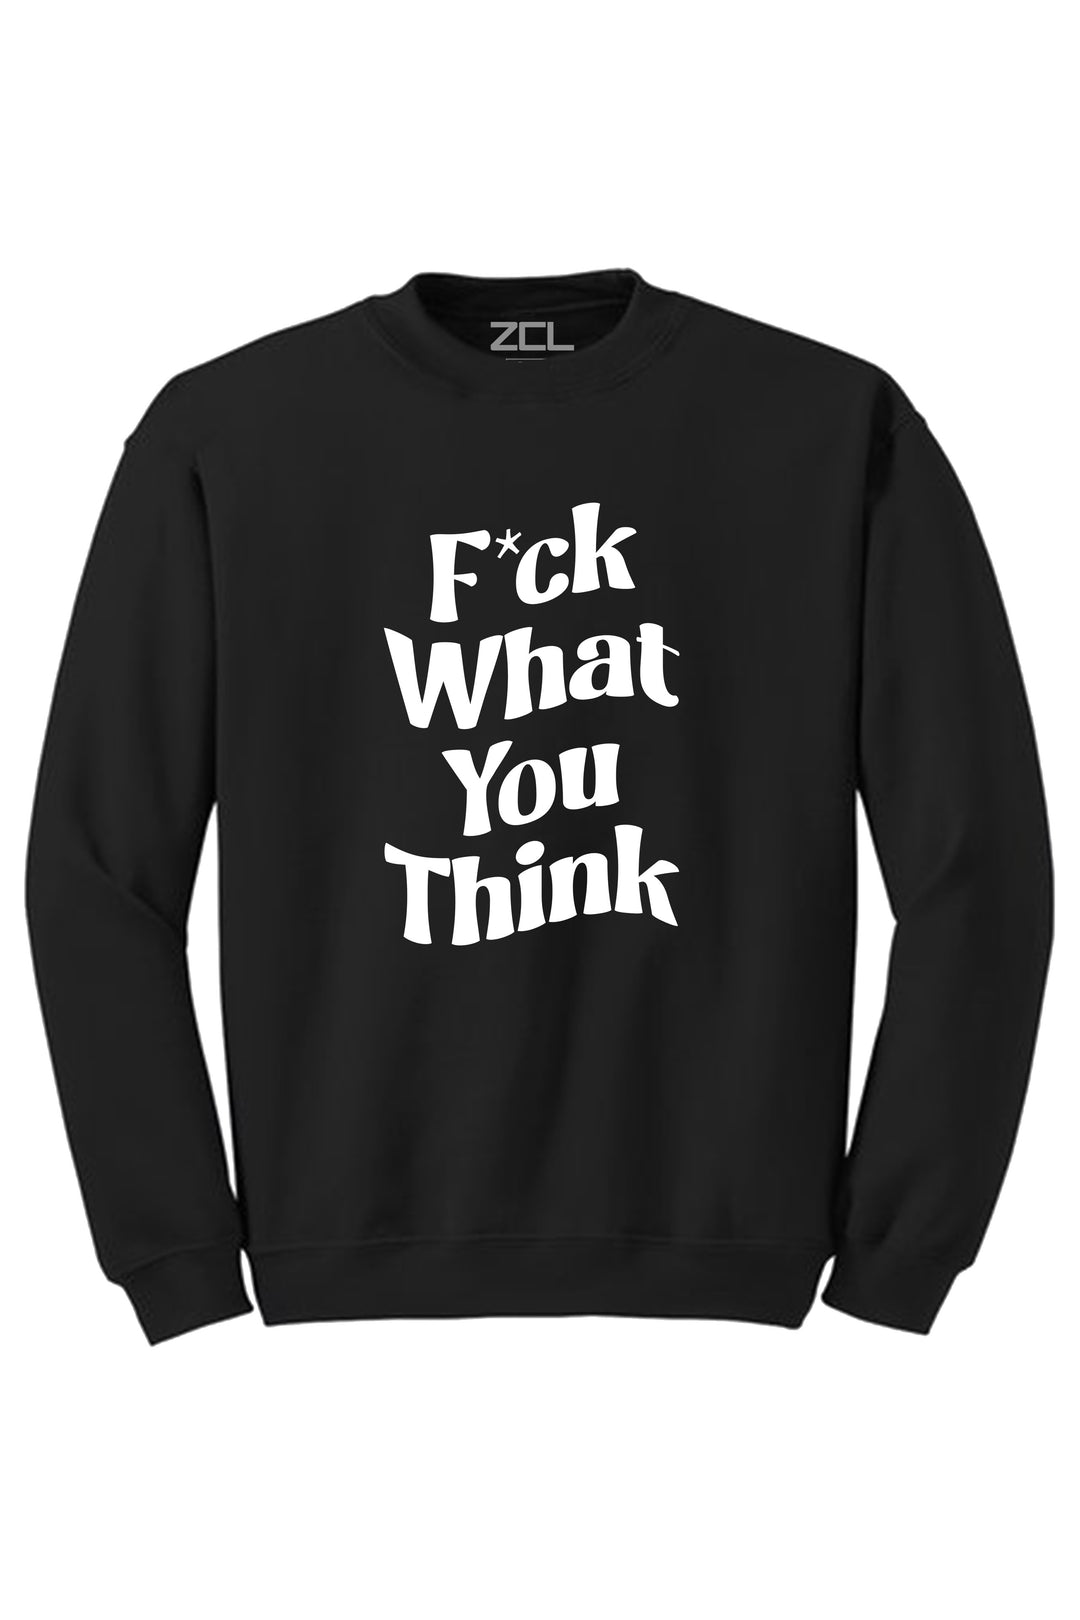 F What You Think Crewneck Sweatshirt (White Logo) - Zamage